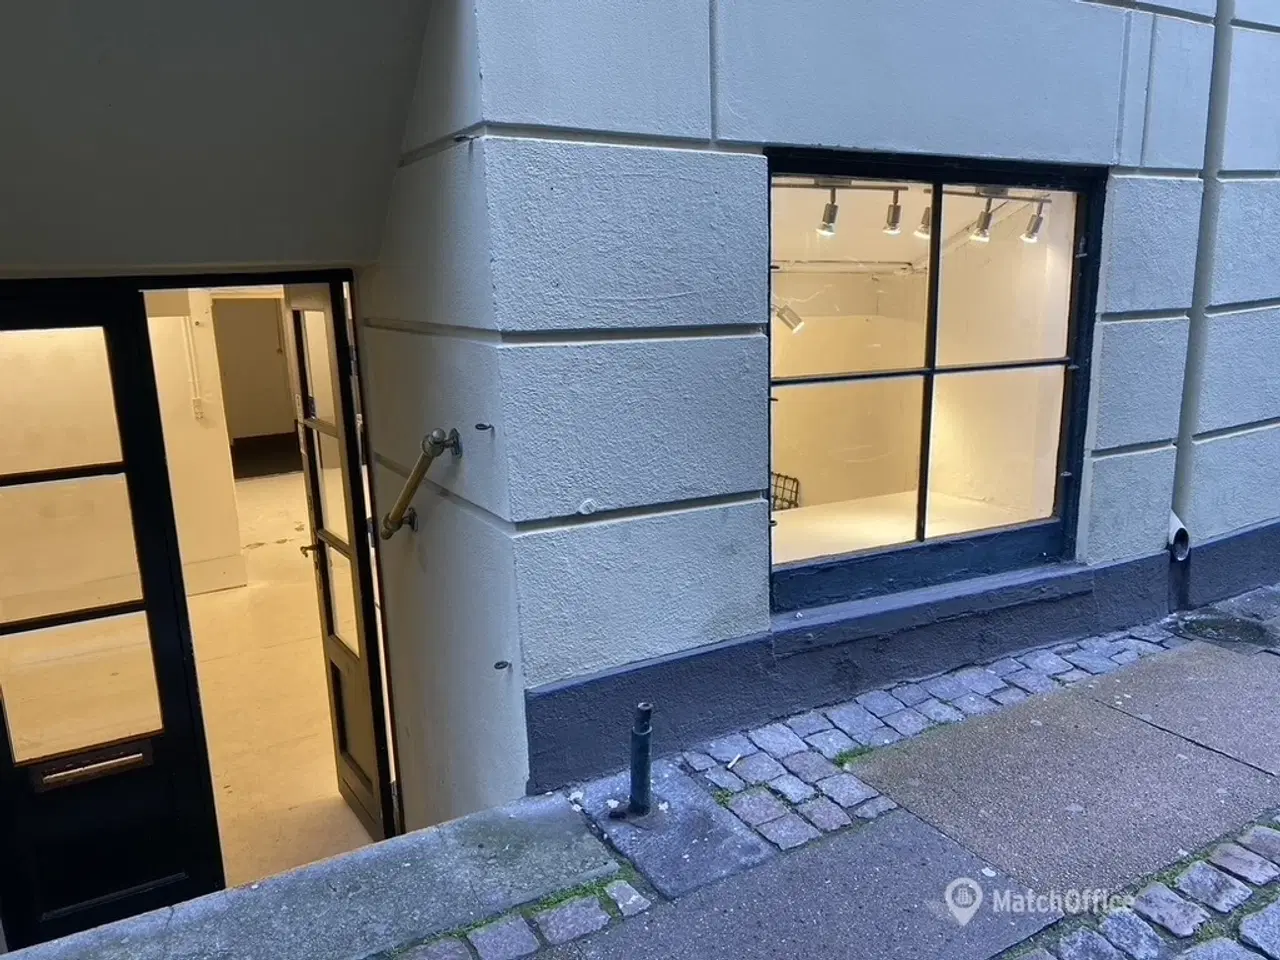 Billede 6 - Super charmerende butikslokale i københavns hyggeligeste gade